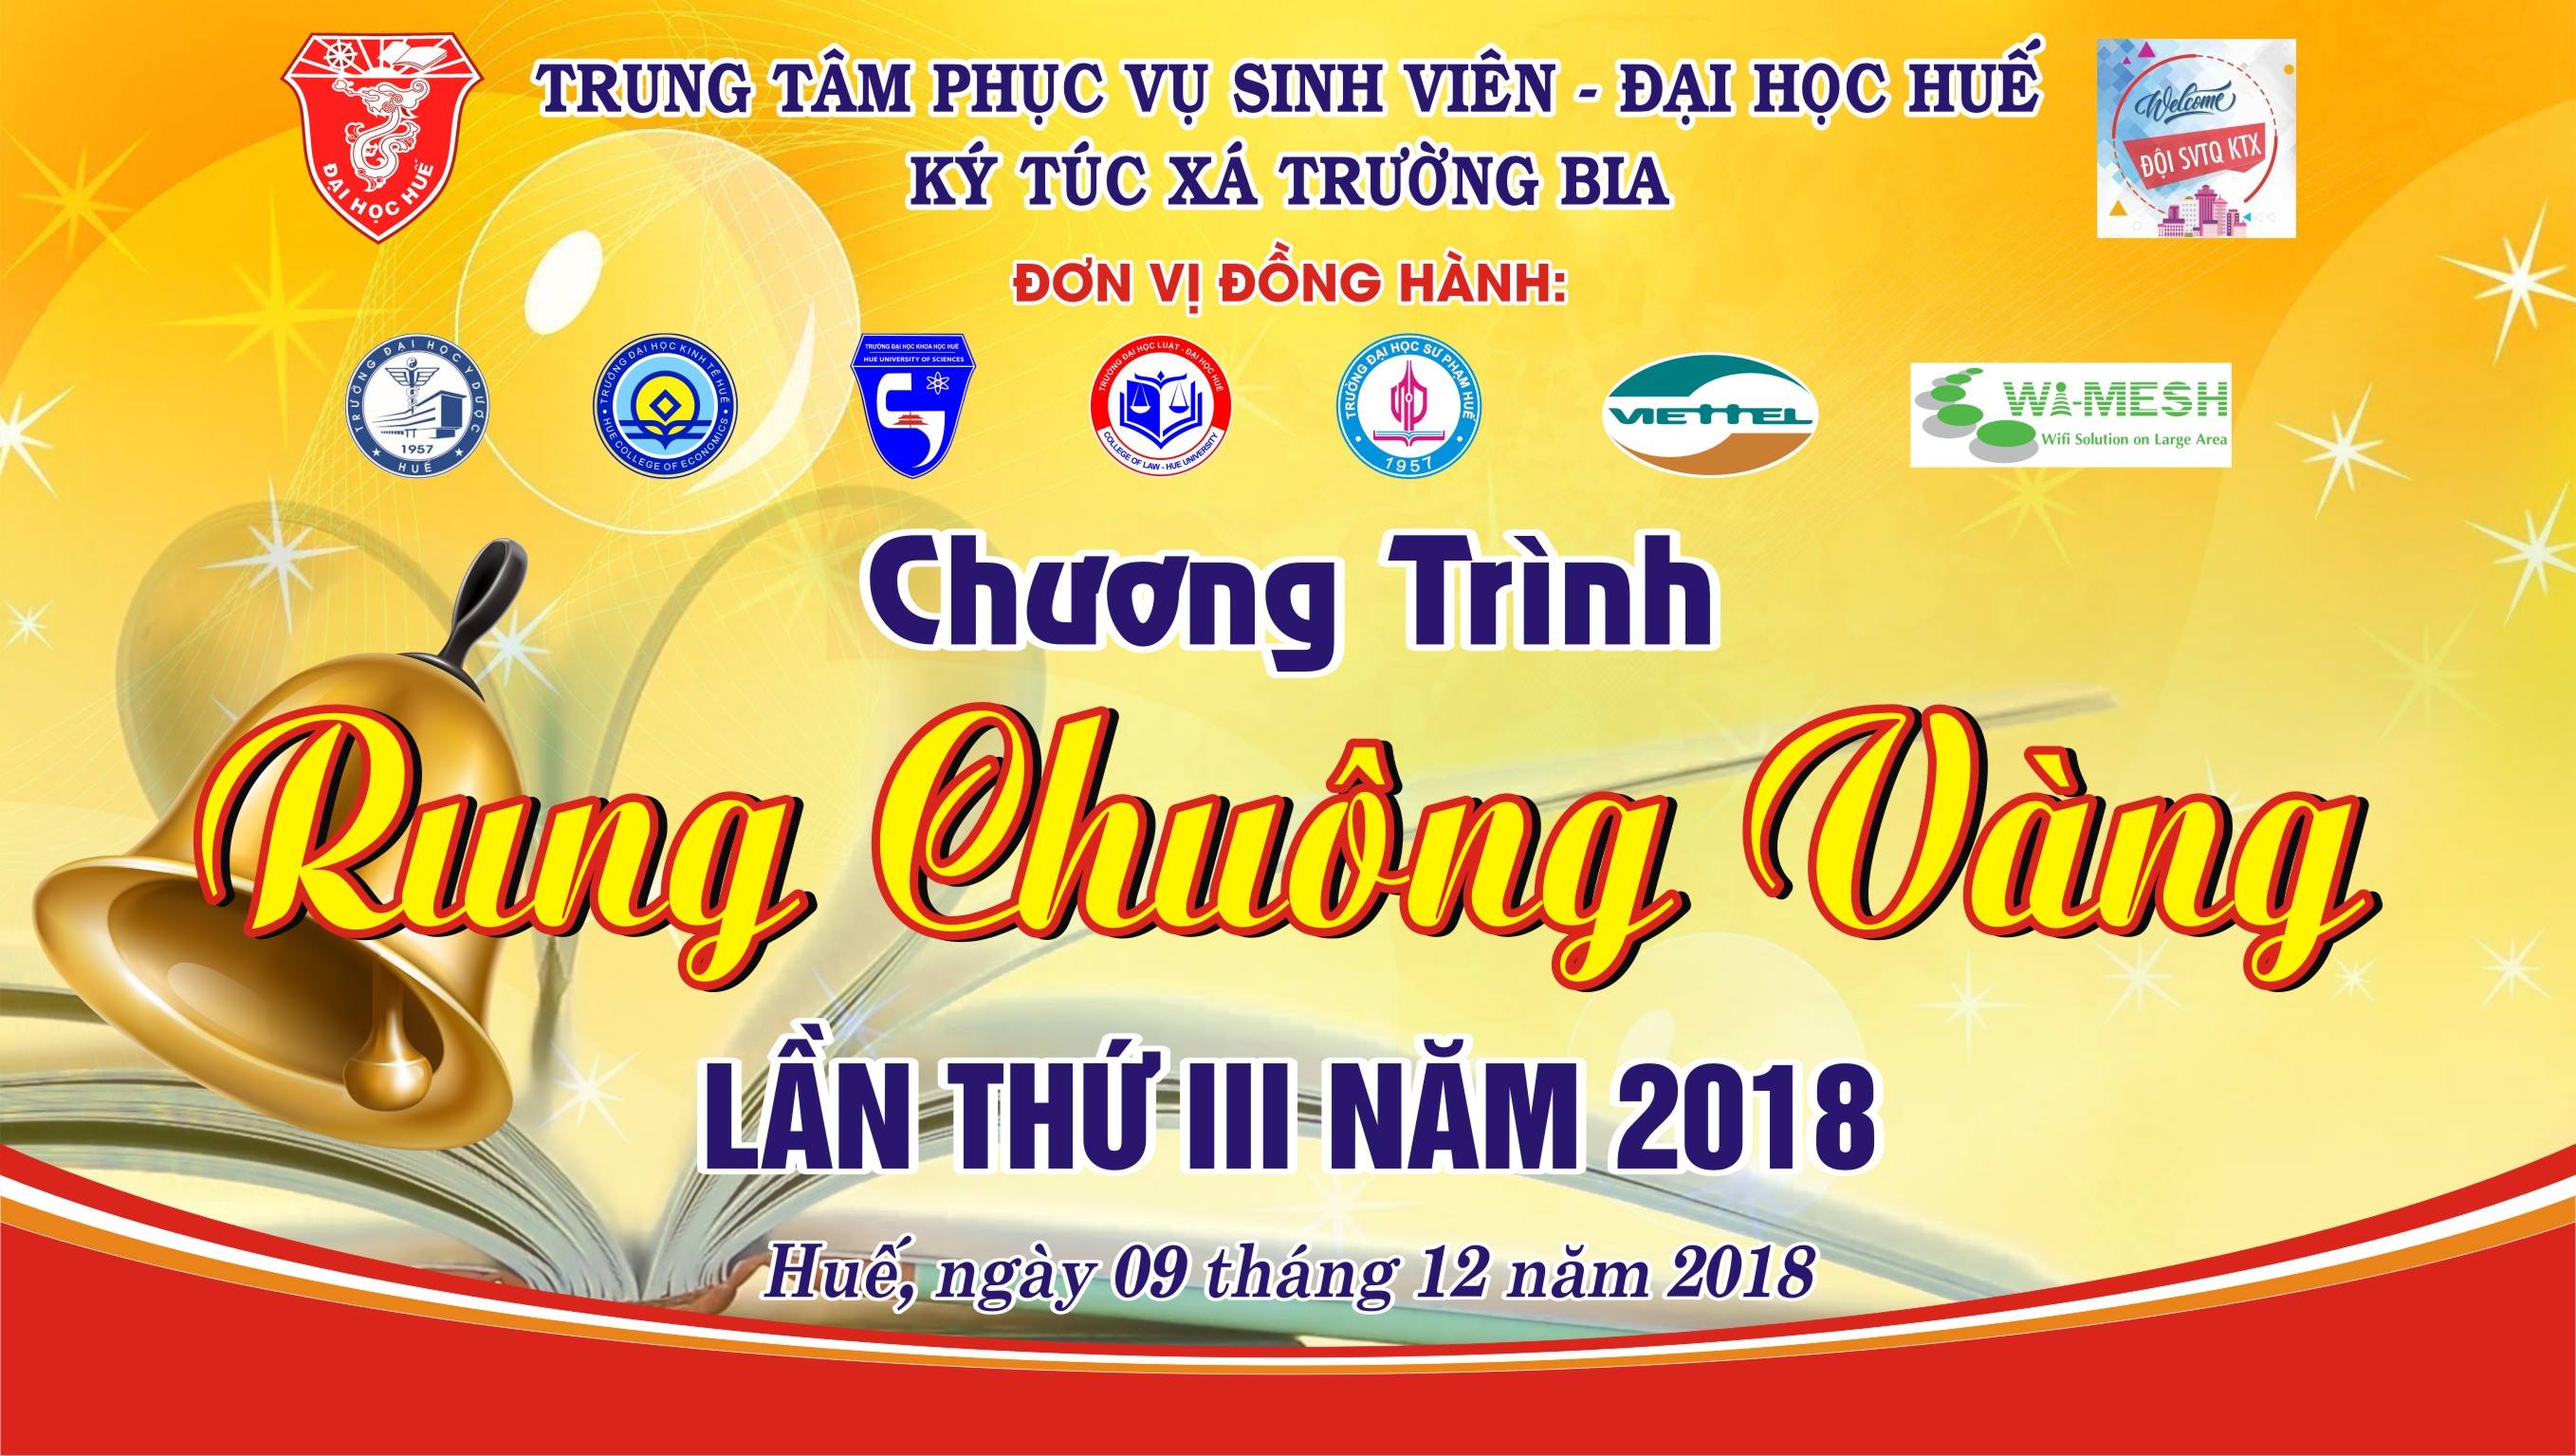 ktx-truong-bia-to-chuc-rung-chuong-vang-lan-thu-iii-nam-2018